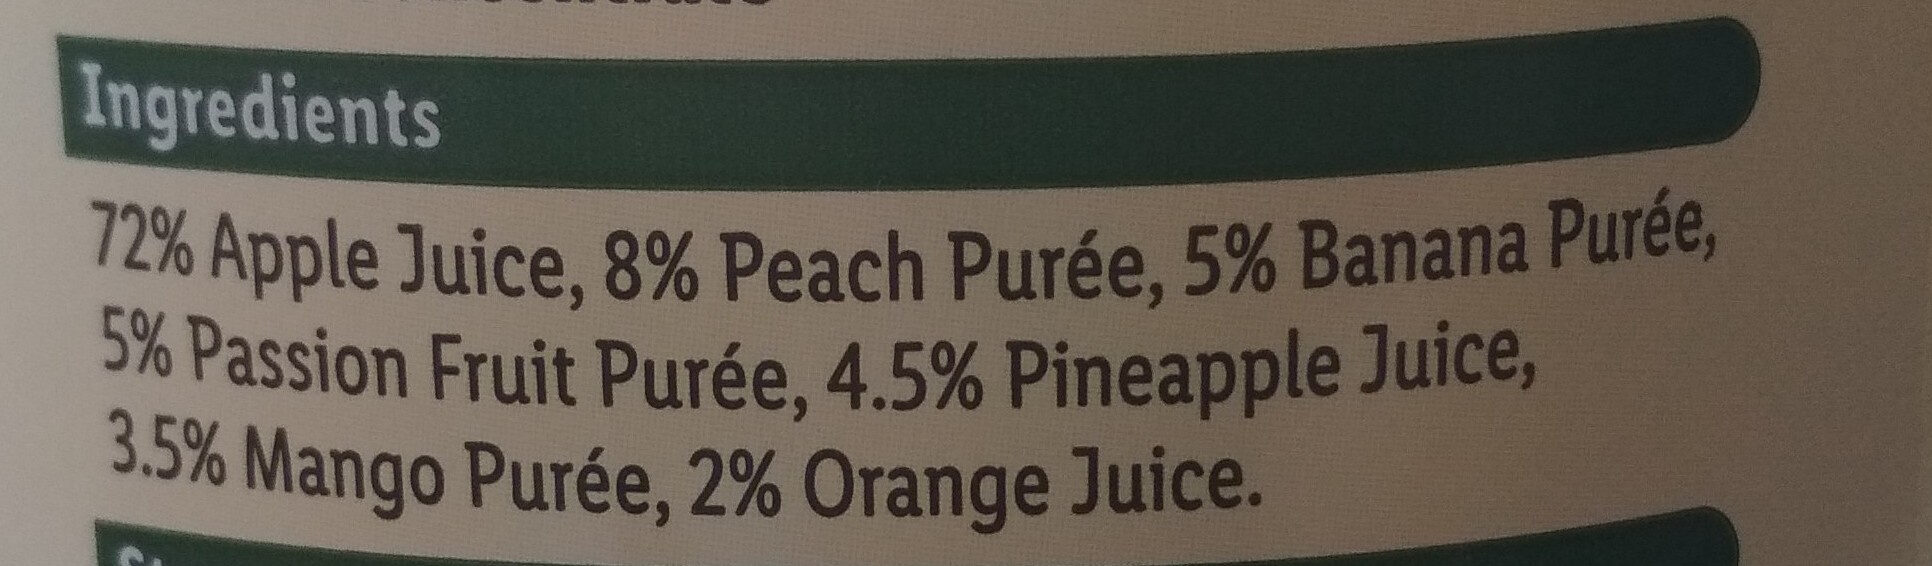 Tropical Juice - Ingredients